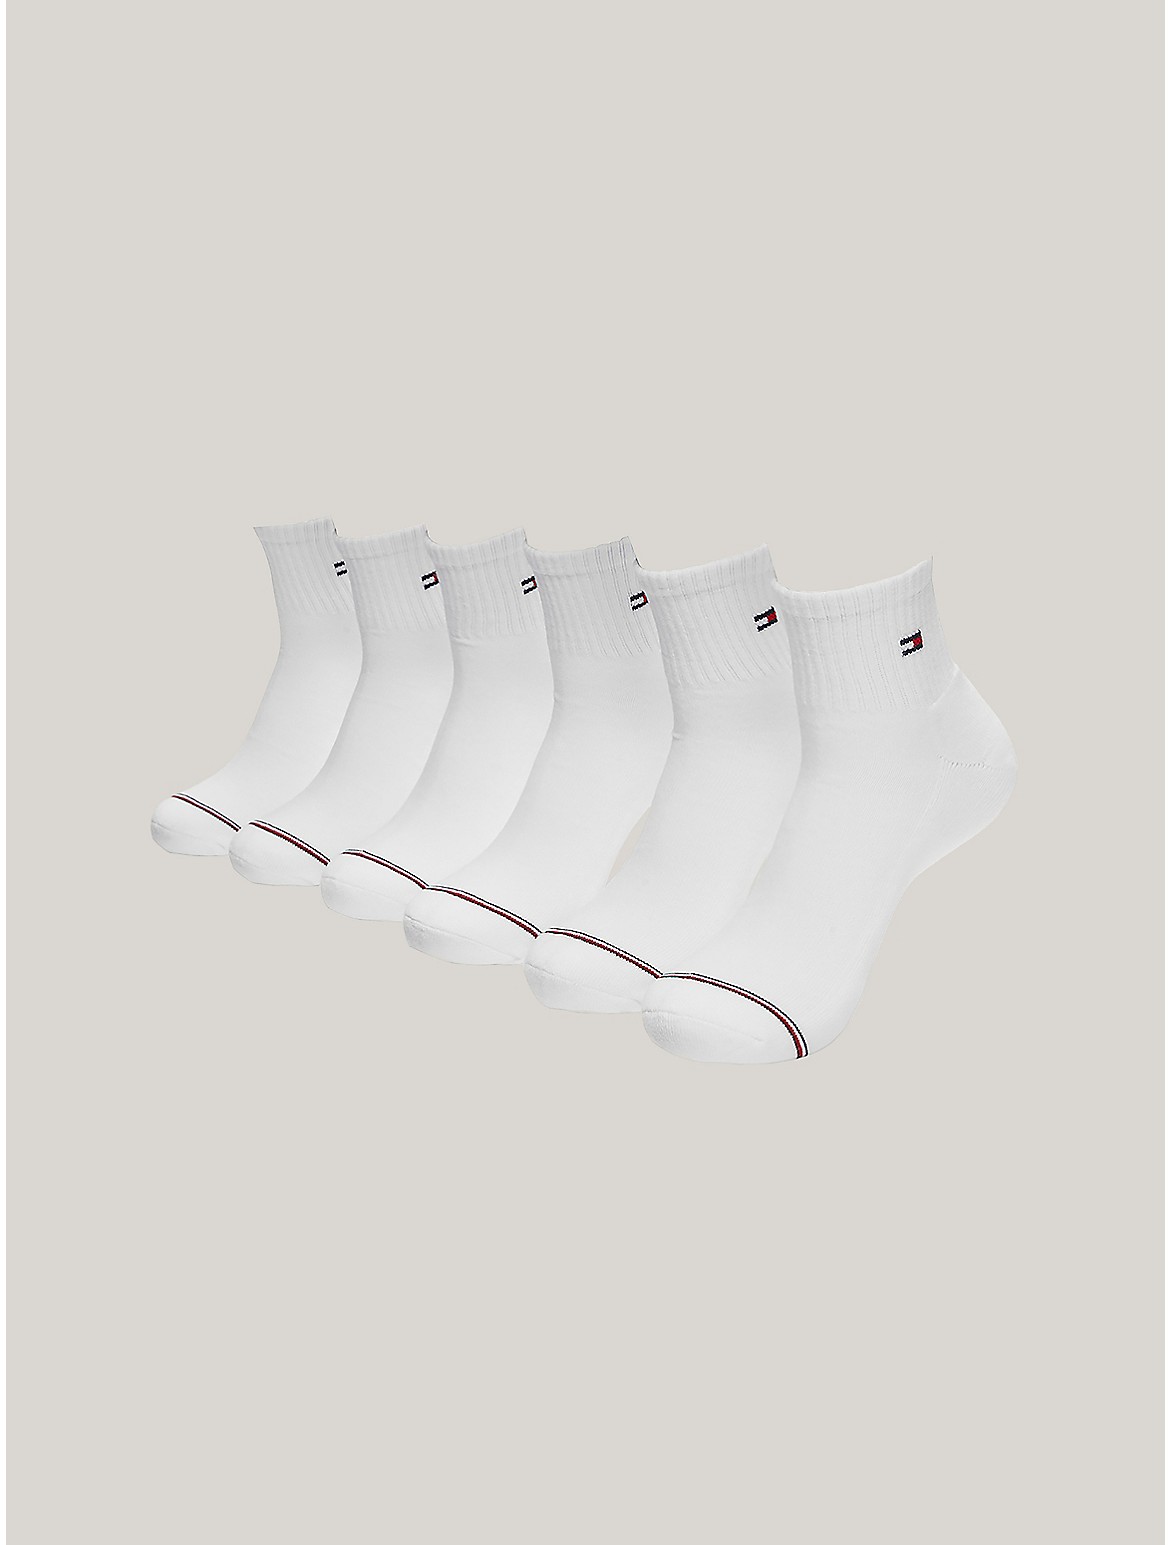 Tommy Hilfiger Men's Quarter Top Socks 6-Pack - White